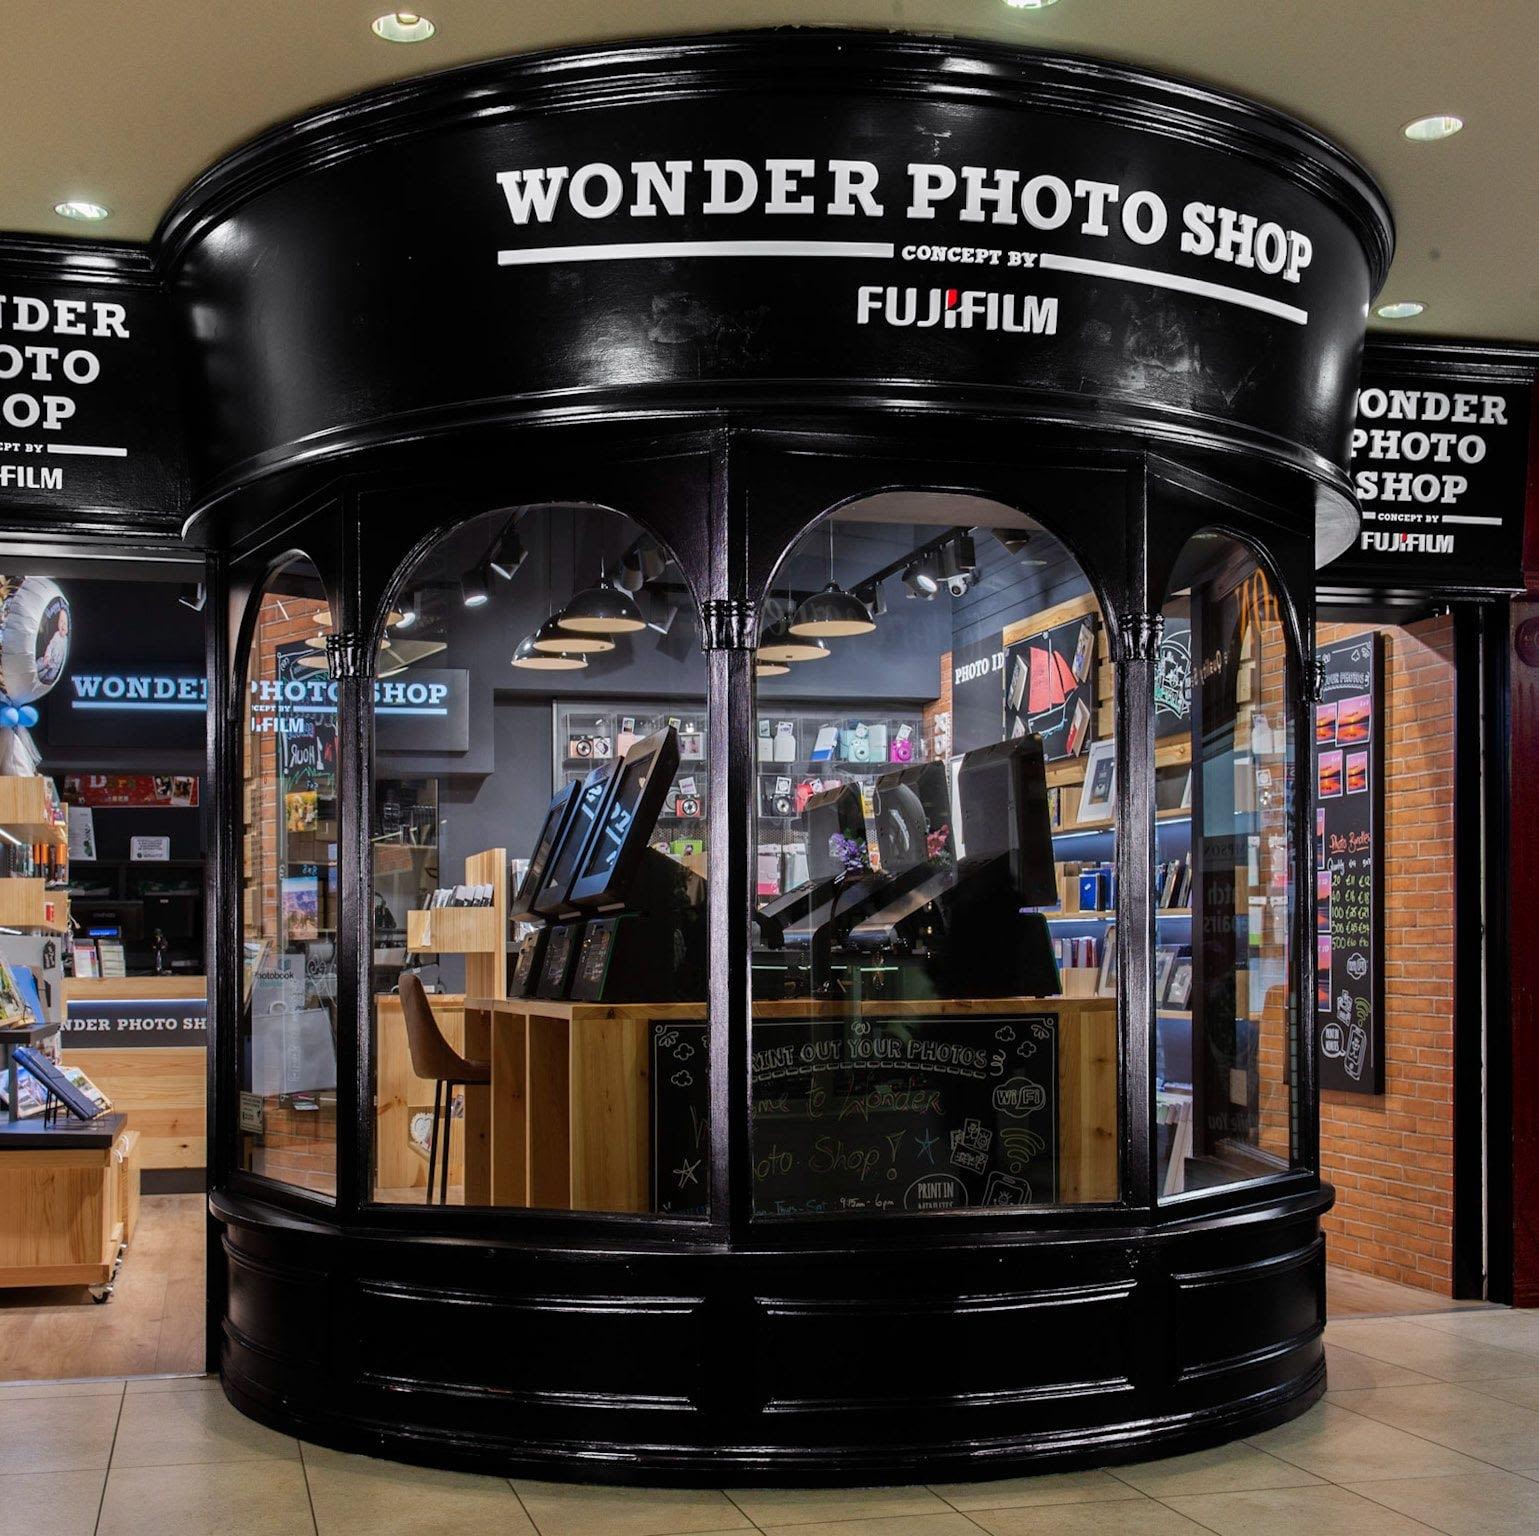 Wonder Photo Shop